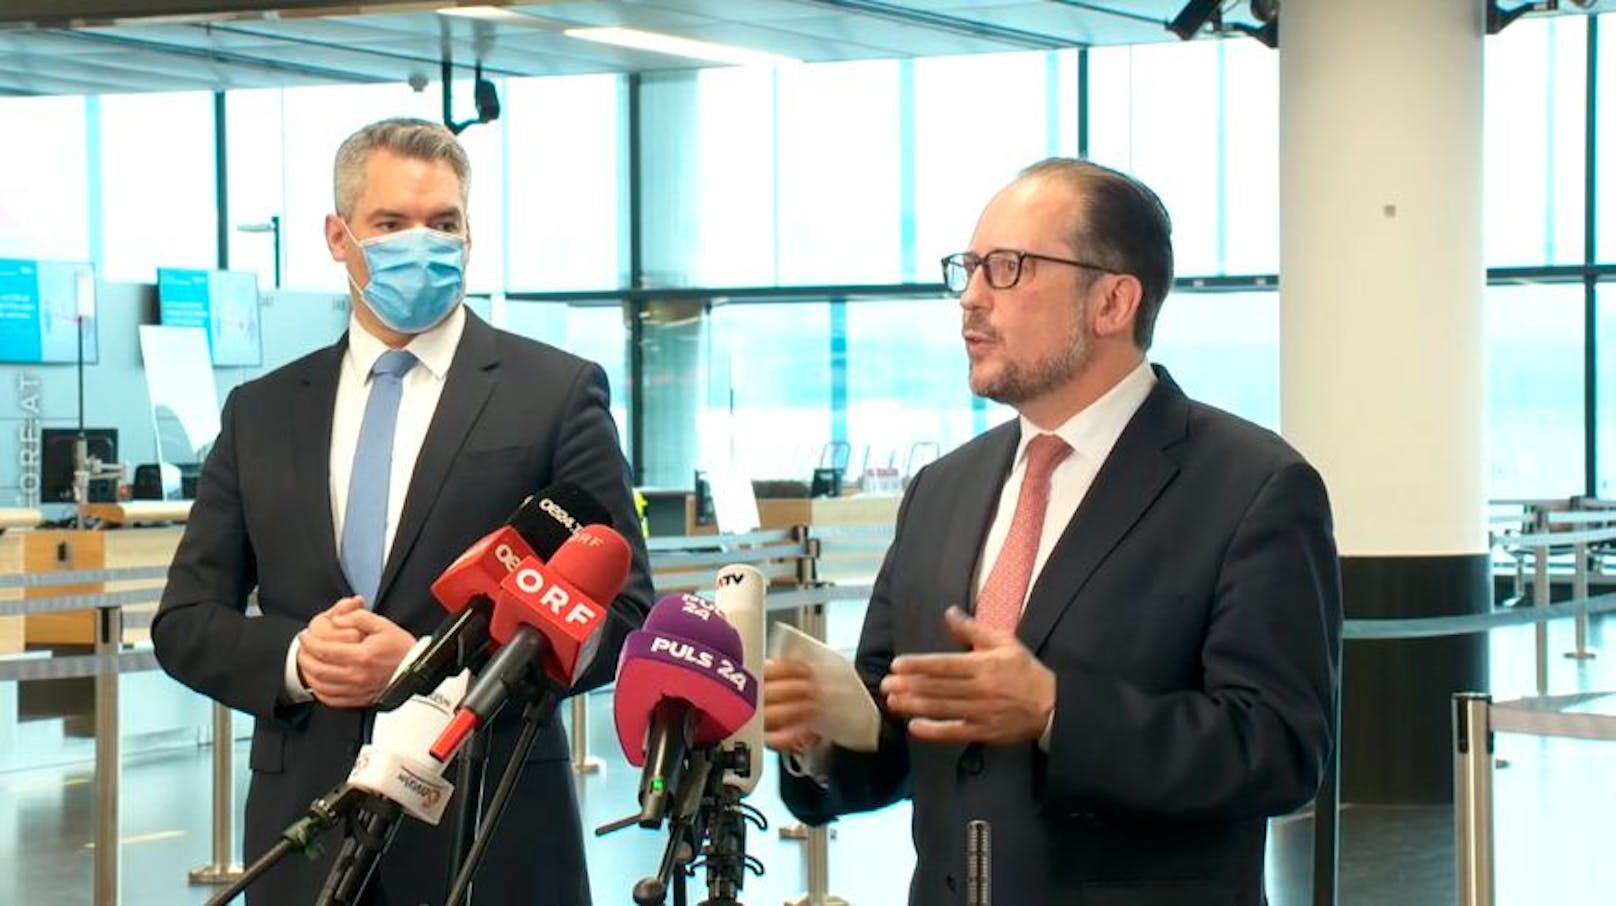 Schallenberg und Nehammer bei ihrer Pressekonferenz am Flughafen Wien-Schwechat